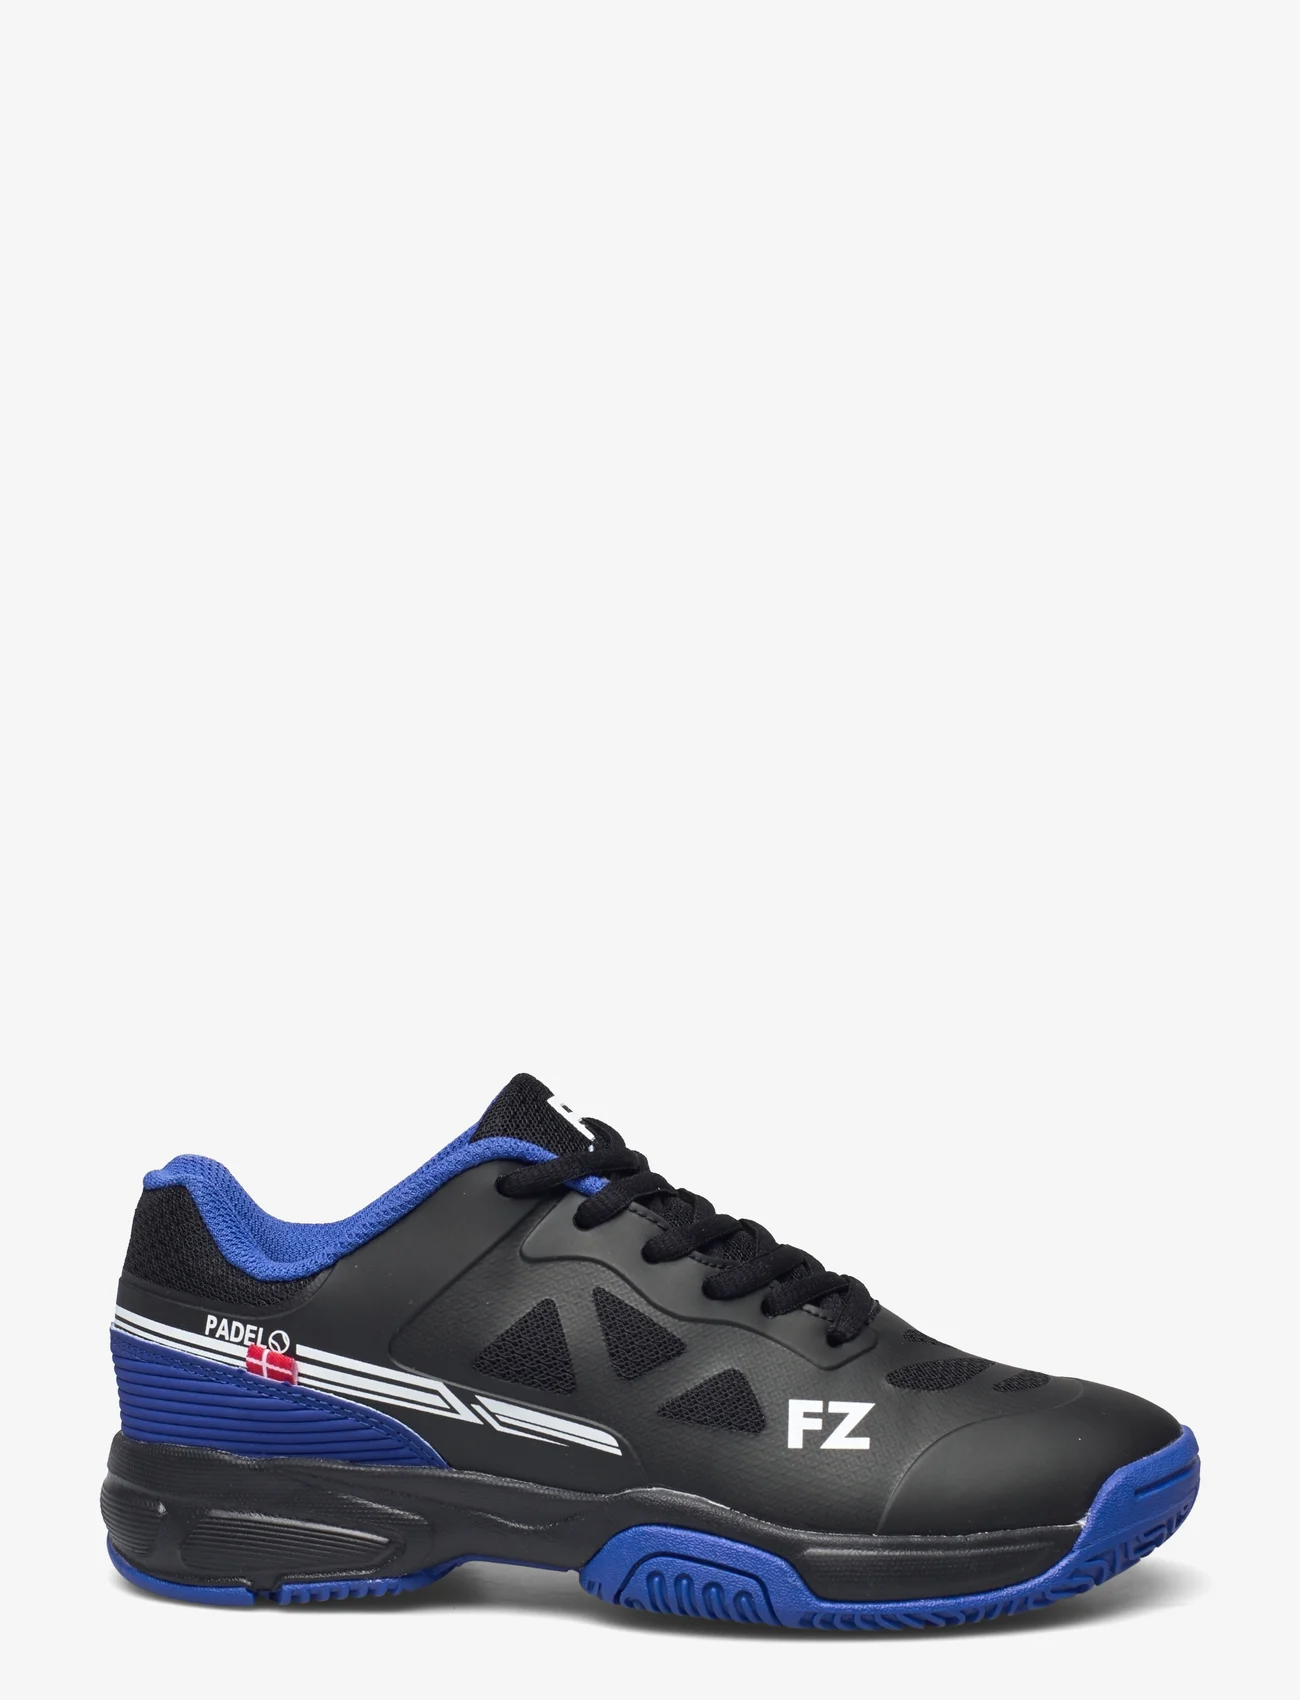 FZ Forza - BRACE PADEL - M - racket-sport sko - 2008 french blue - 1